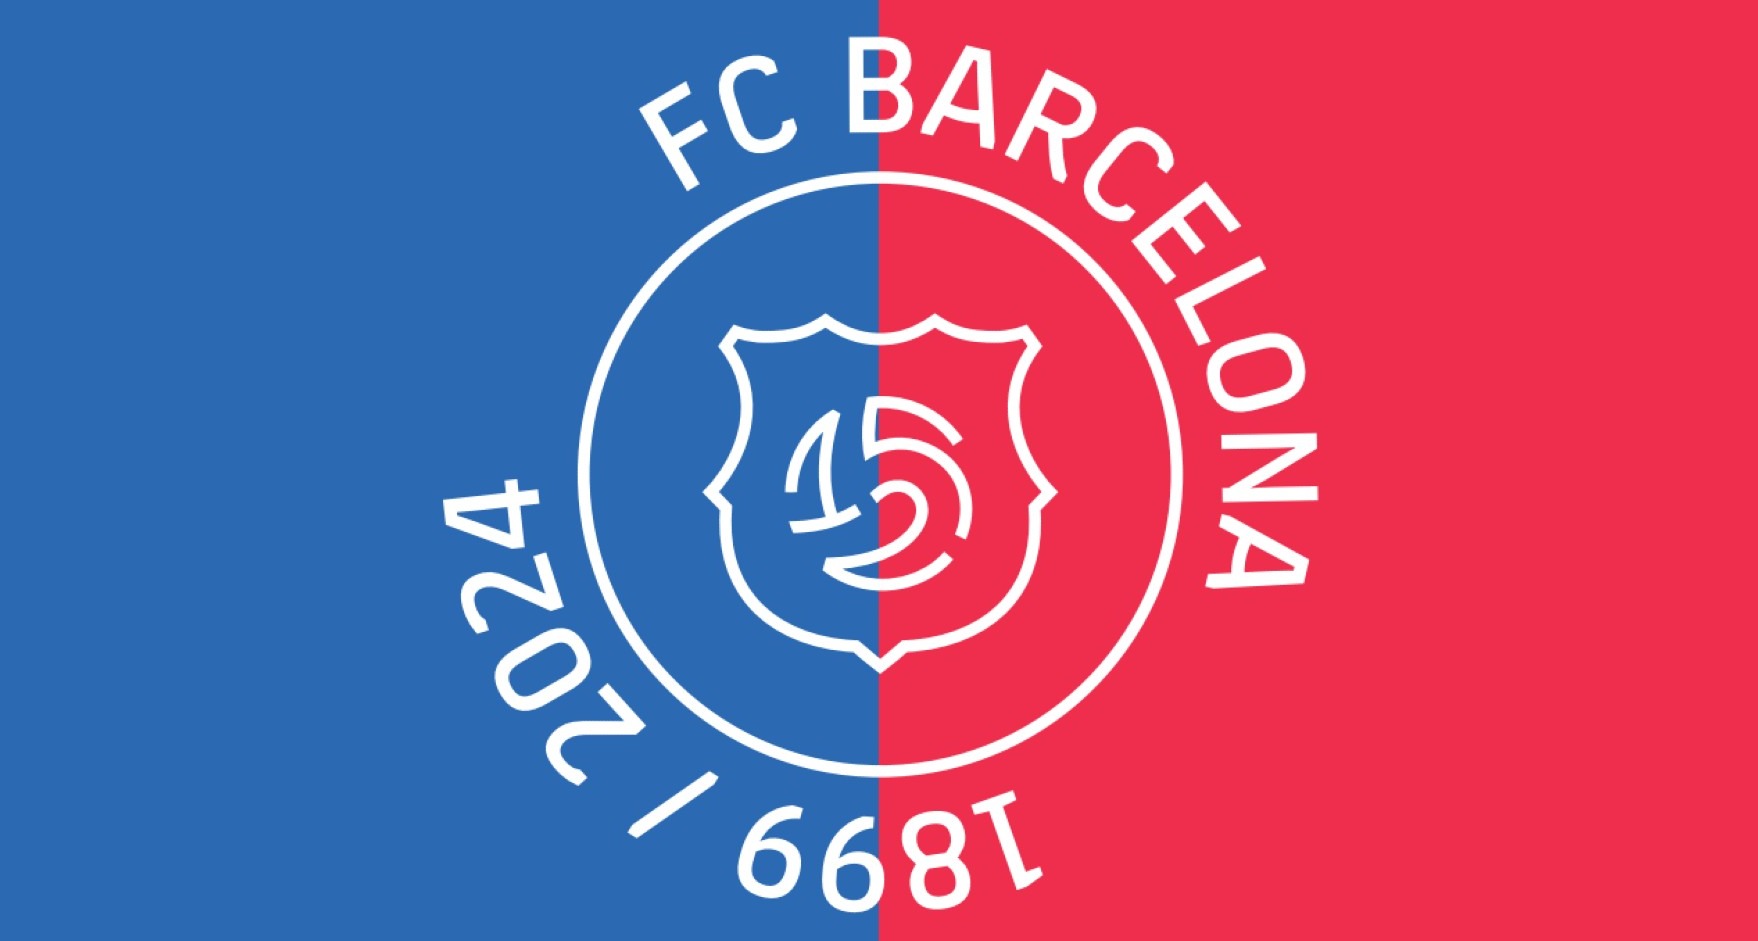 Logotipo del FC Barcelona para su 125 aniversario